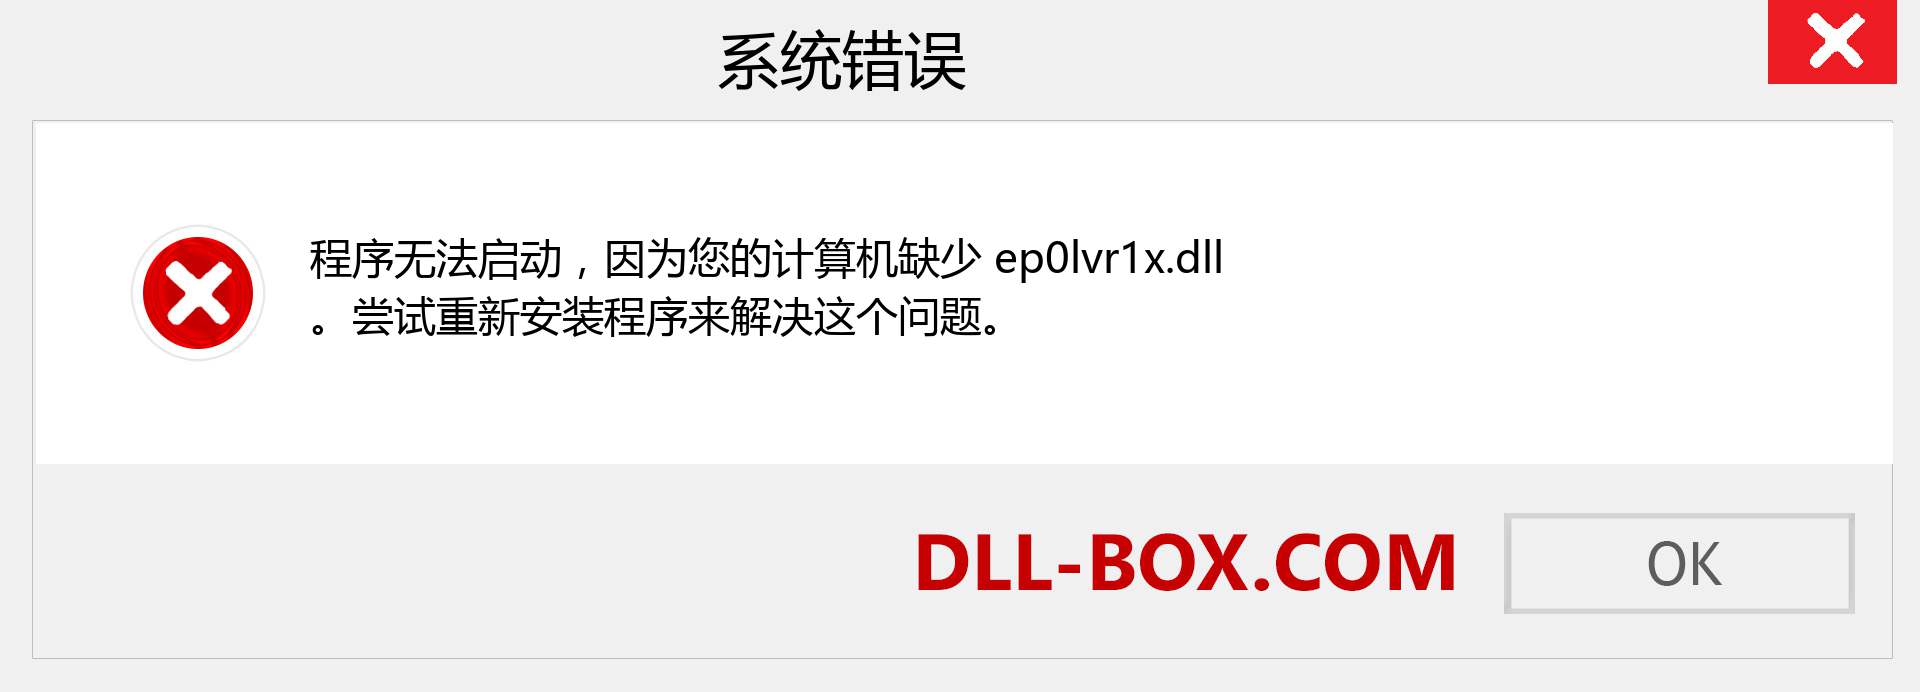 ep0lvr1x.dll 文件丢失？。 适用于 Windows 7、8、10 的下载 - 修复 Windows、照片、图像上的 ep0lvr1x dll 丢失错误